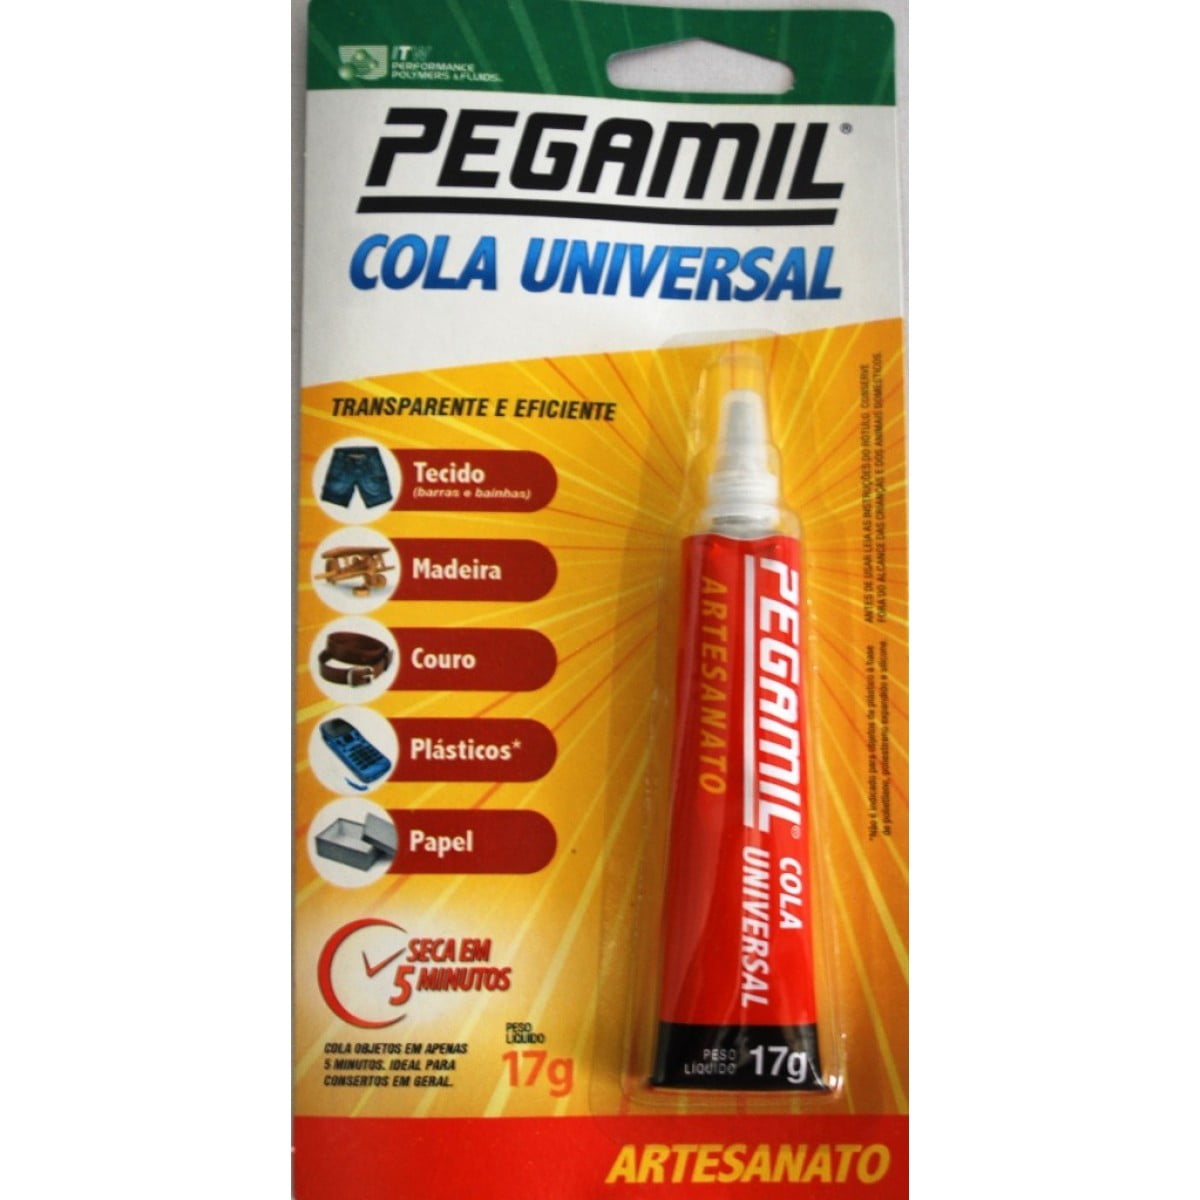 Cola Universal Pegamil 17G